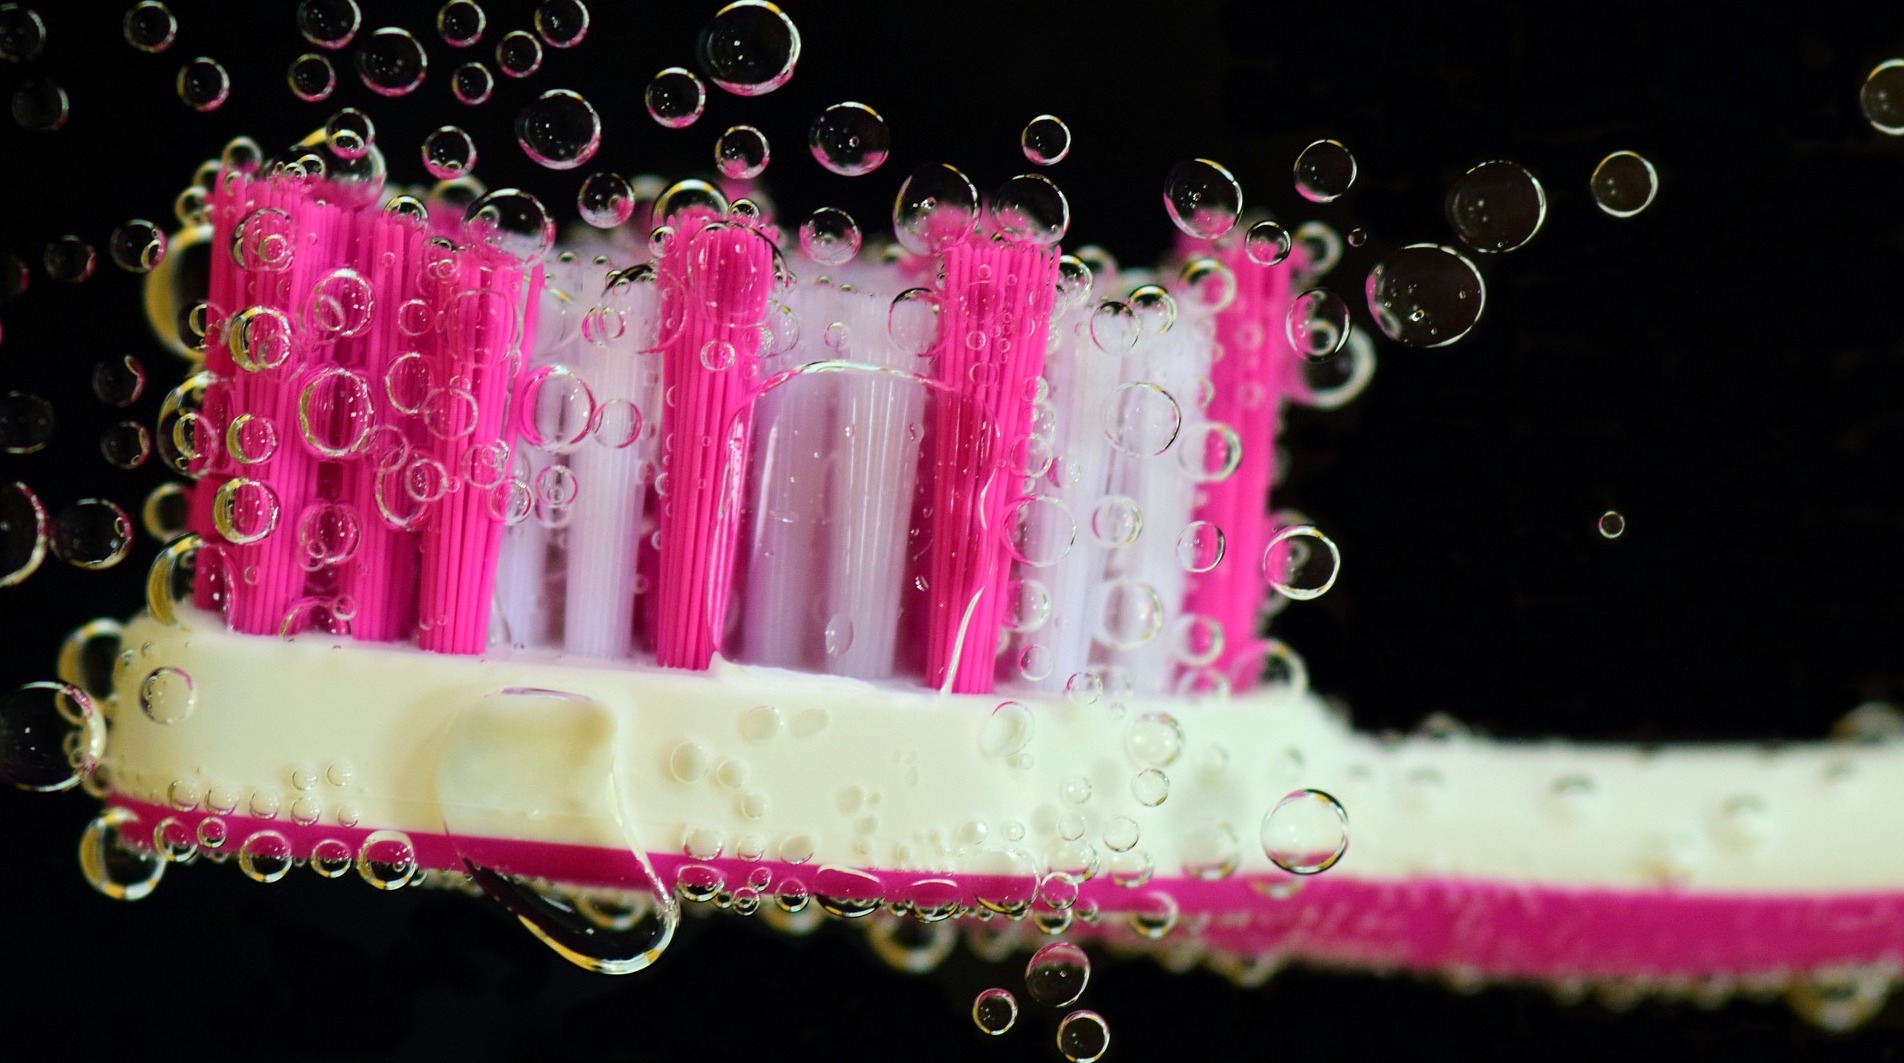 toothbrush-2751212_1920